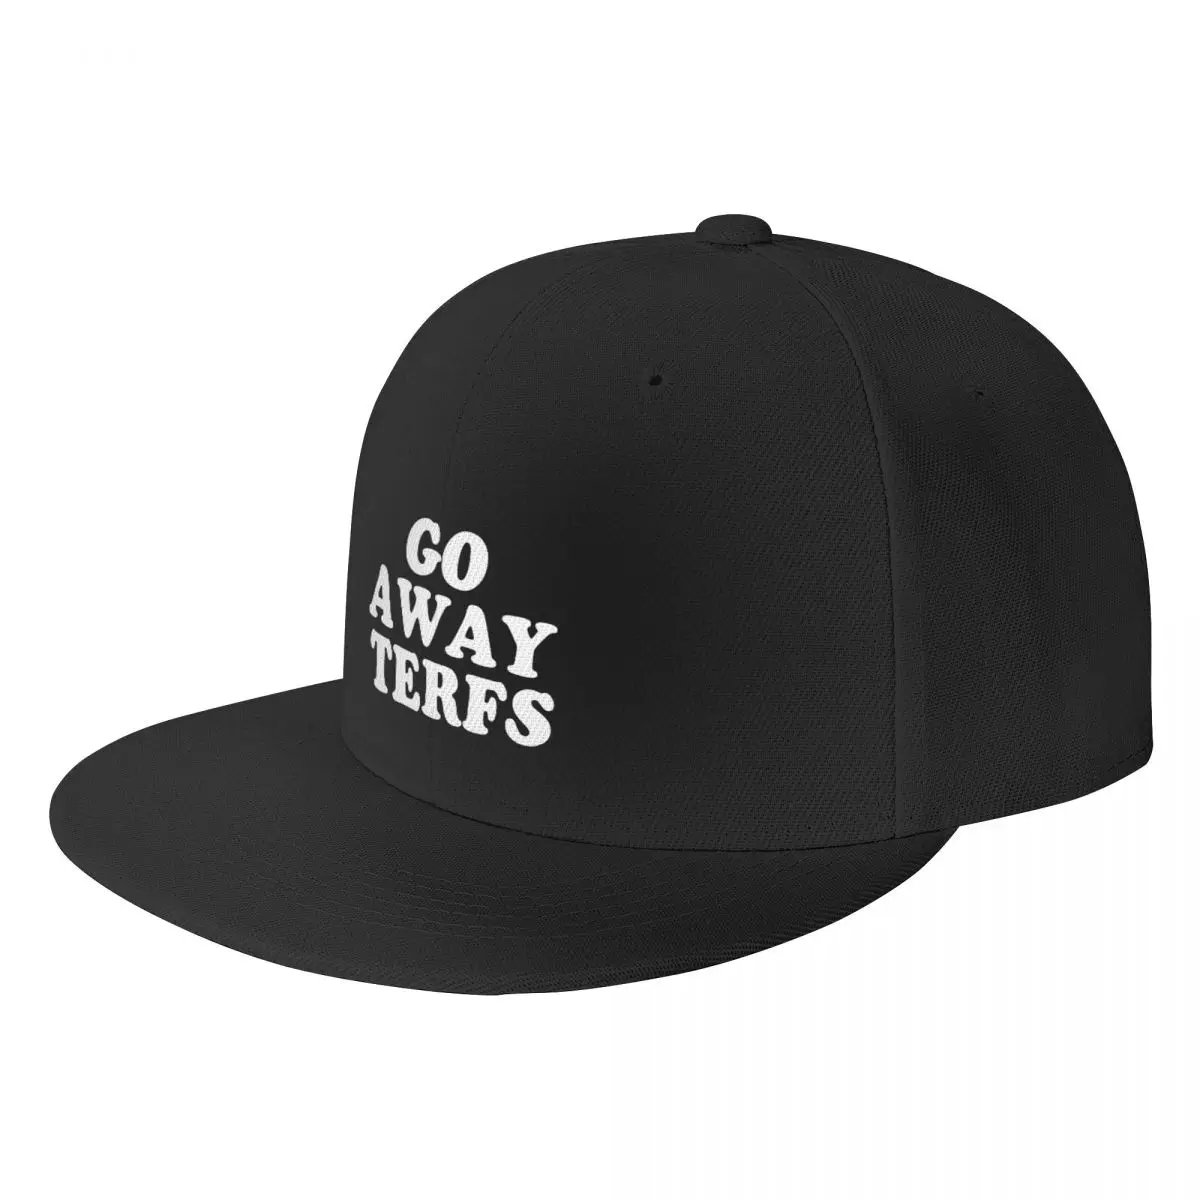 

Go away TERFs Baseball Cap funny hat Thermal Visor Women's Hats Men's